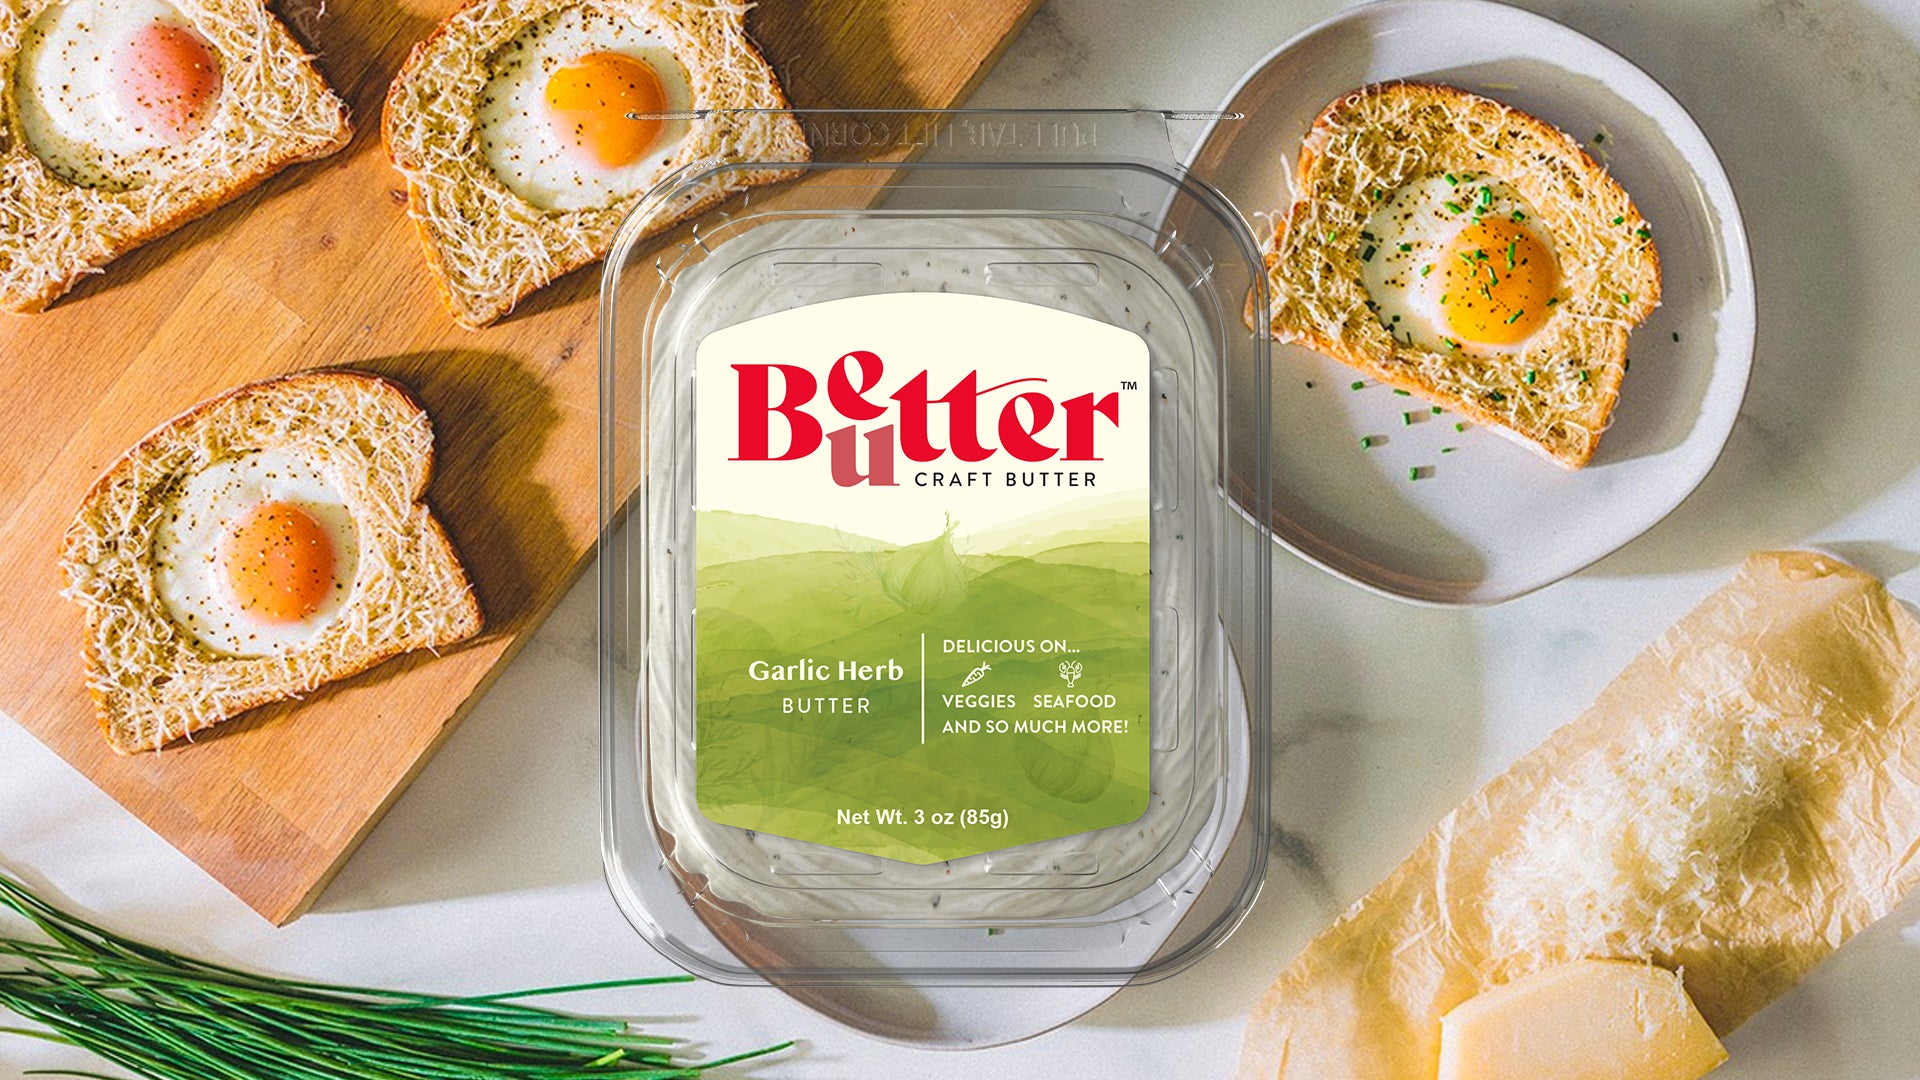 Garlic Herb Craft Butter